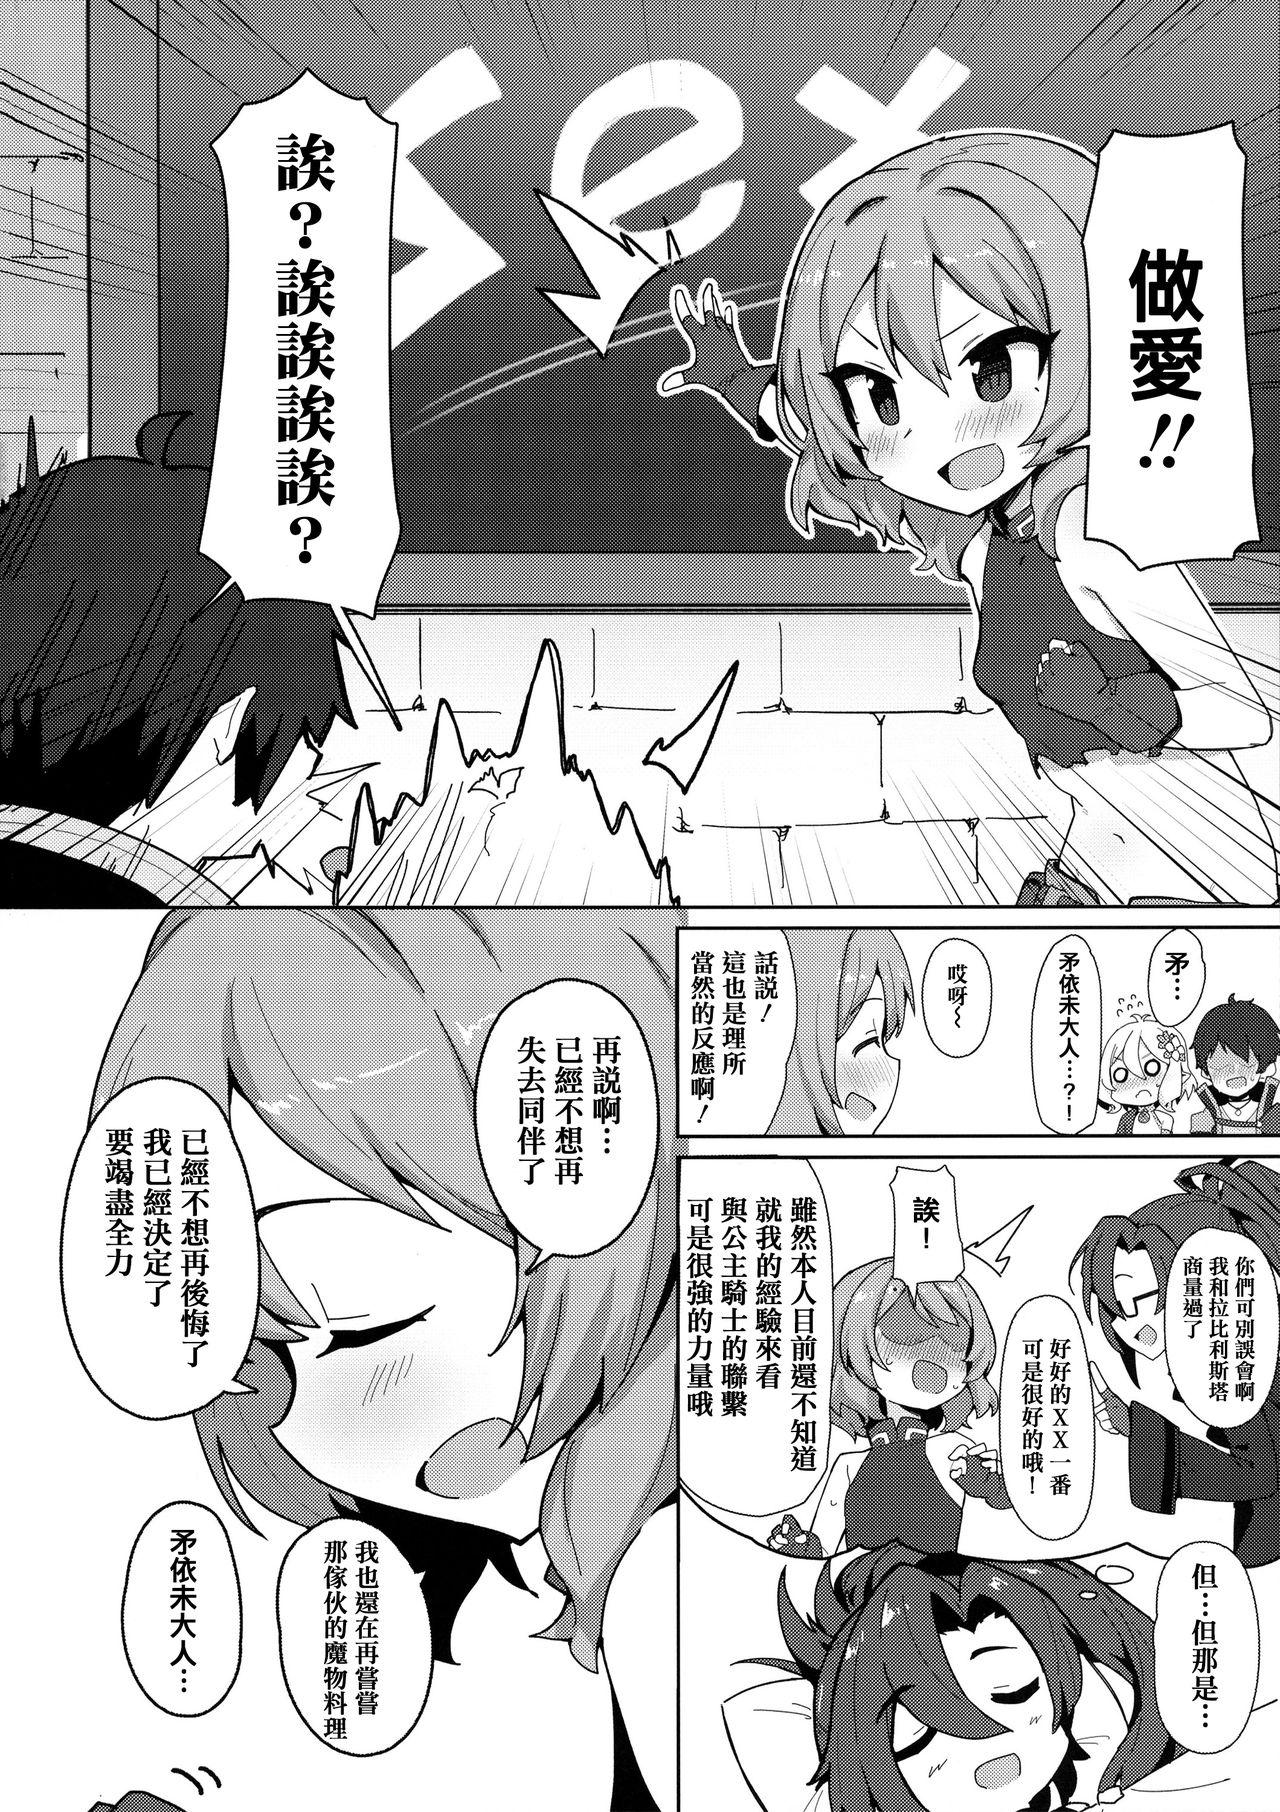 Jap Minna to Connect de Dairankou - Princess connect Gapes Gaping Asshole - Page 4